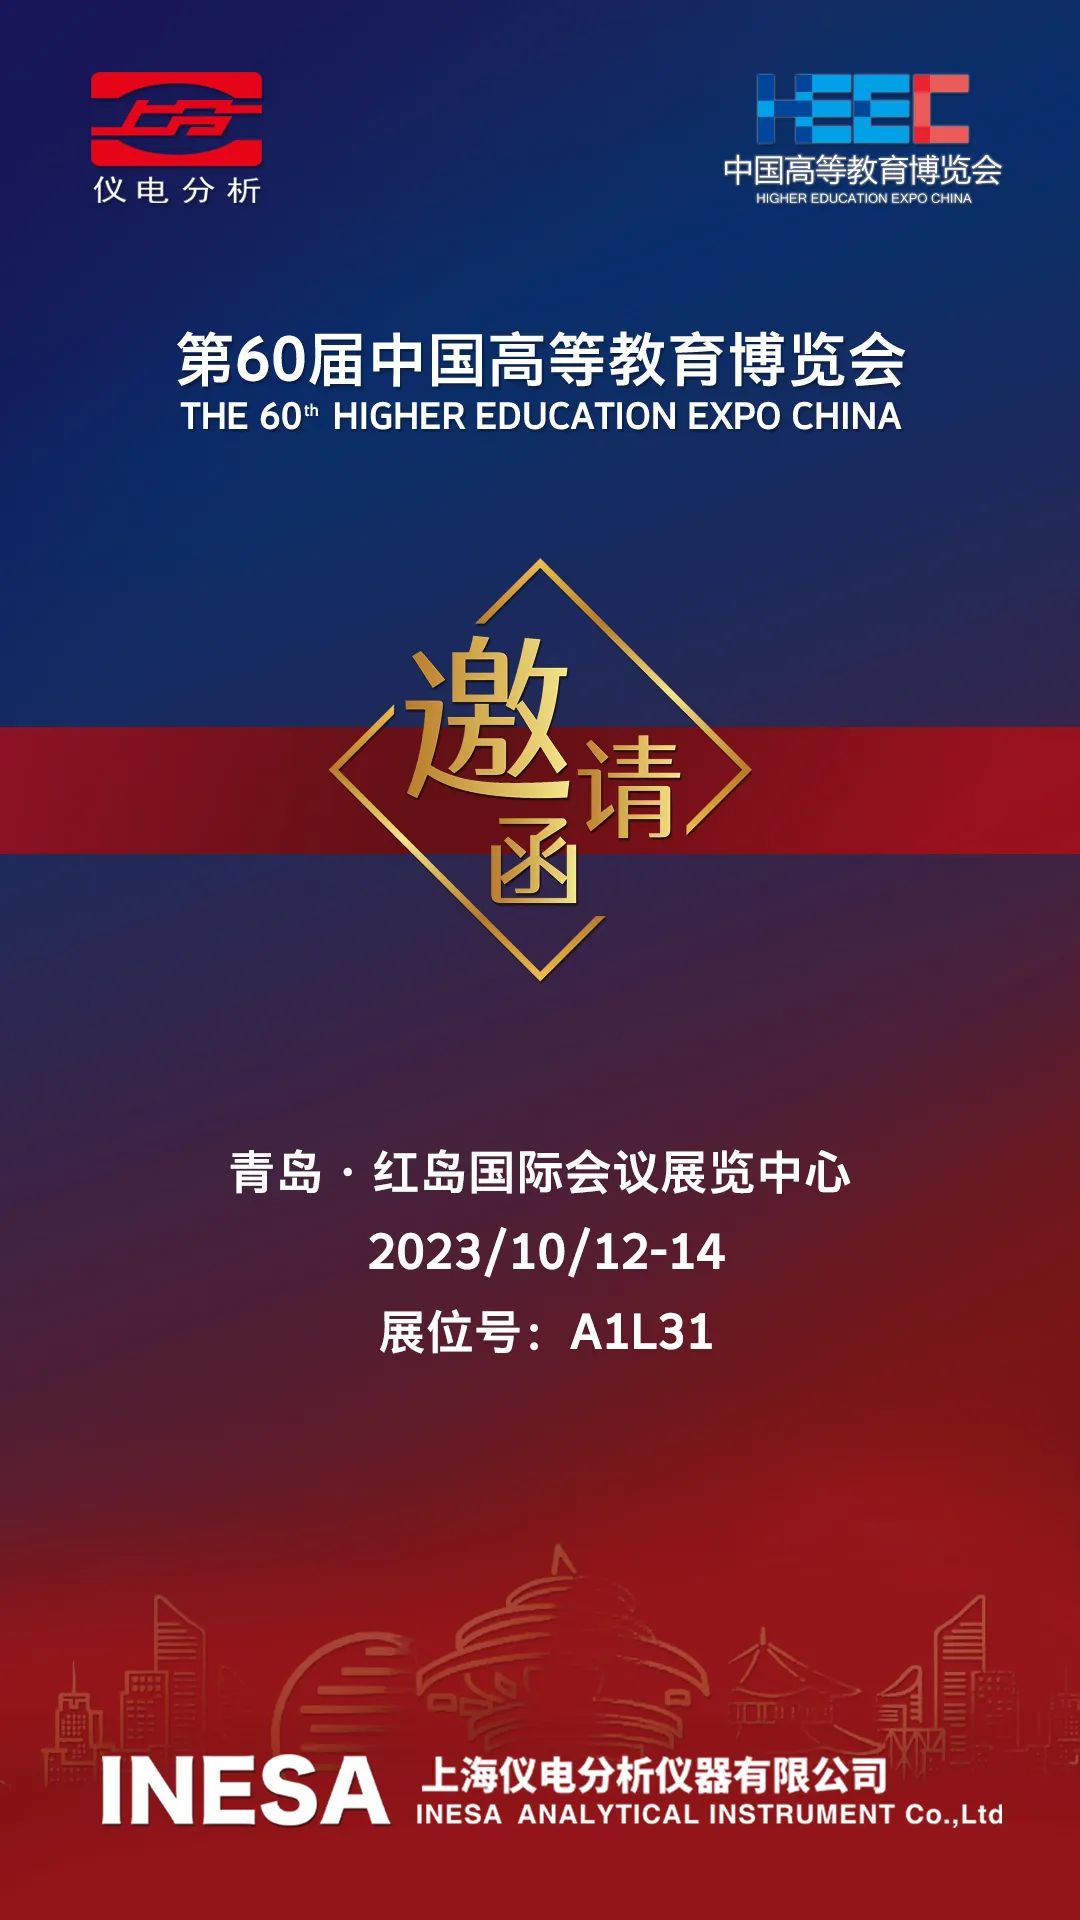 【仪电分析】诚邀您参加第60届中国高等教育博览会